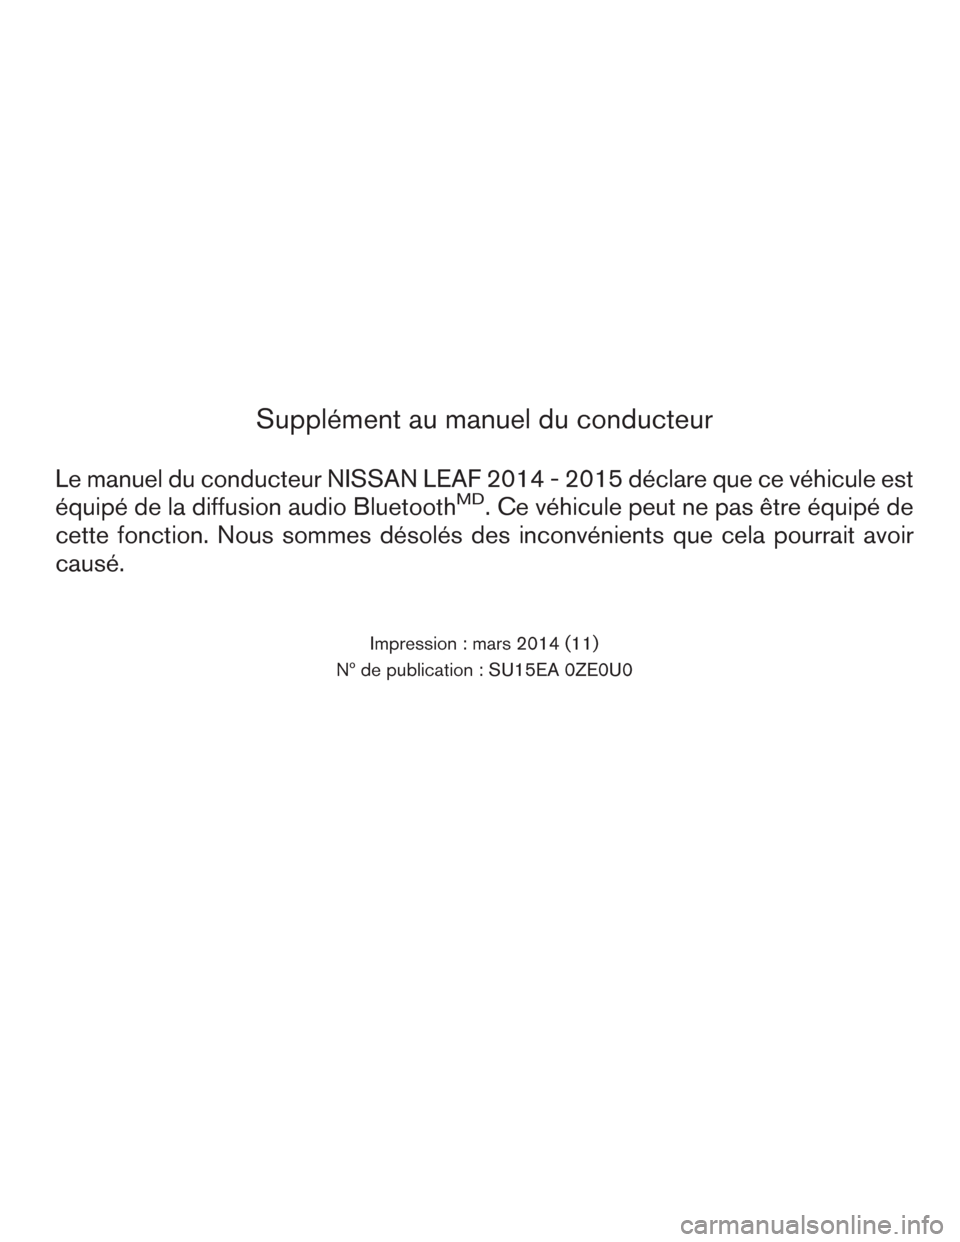 NISSAN LEAF 2015 1.G Owners Manual Supplément au manuel du conducteur
Le manuel du conducteur NISSAN LEAF 2014 - 2015 déclare que ce véhicule est
équipé de la diffusion audio Bluetooth
MD. Ce véhicule peut ne pas être équipé d